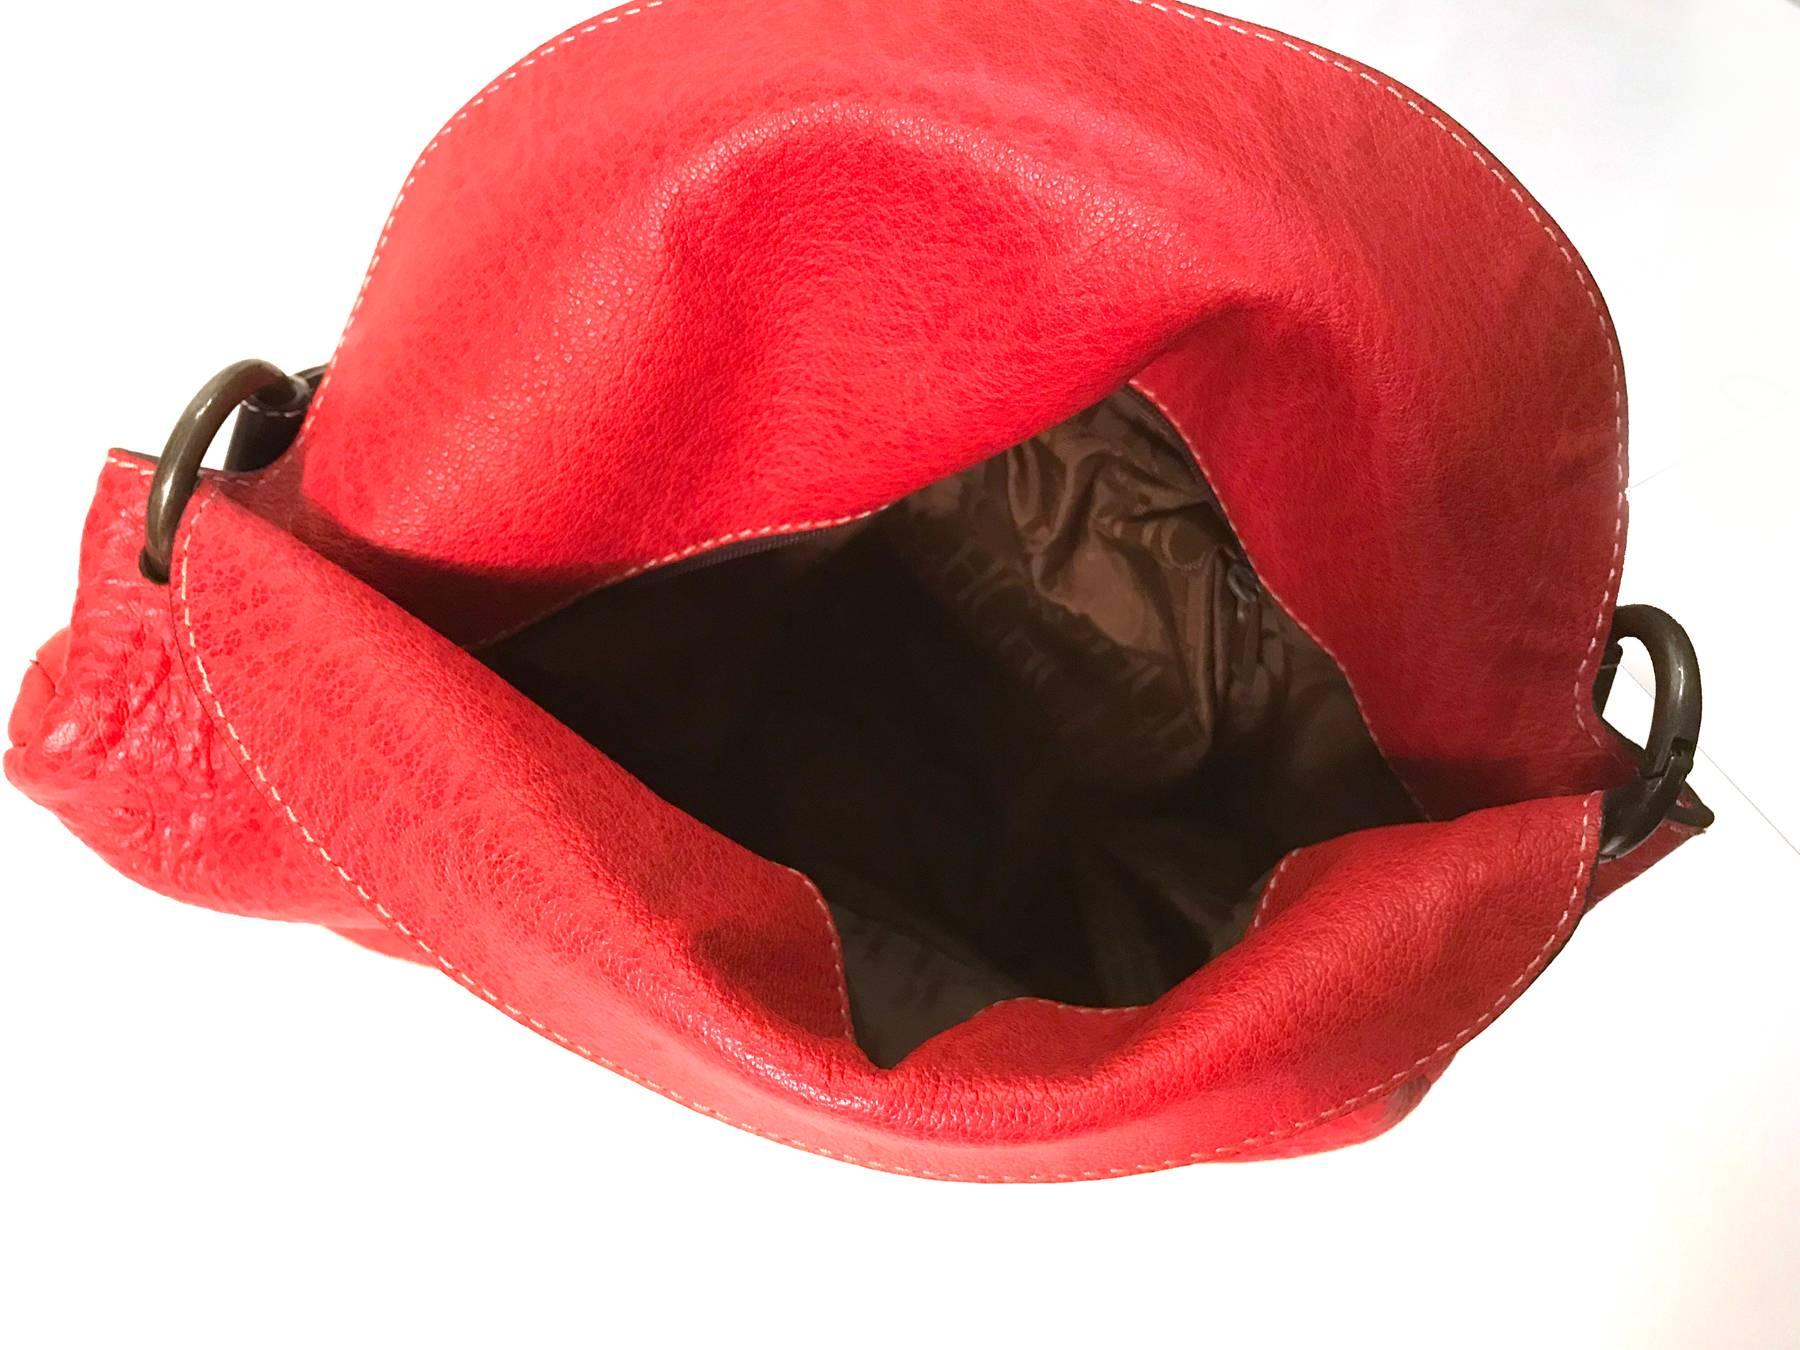 Carolina Herrera red hobo bag For Sale 1